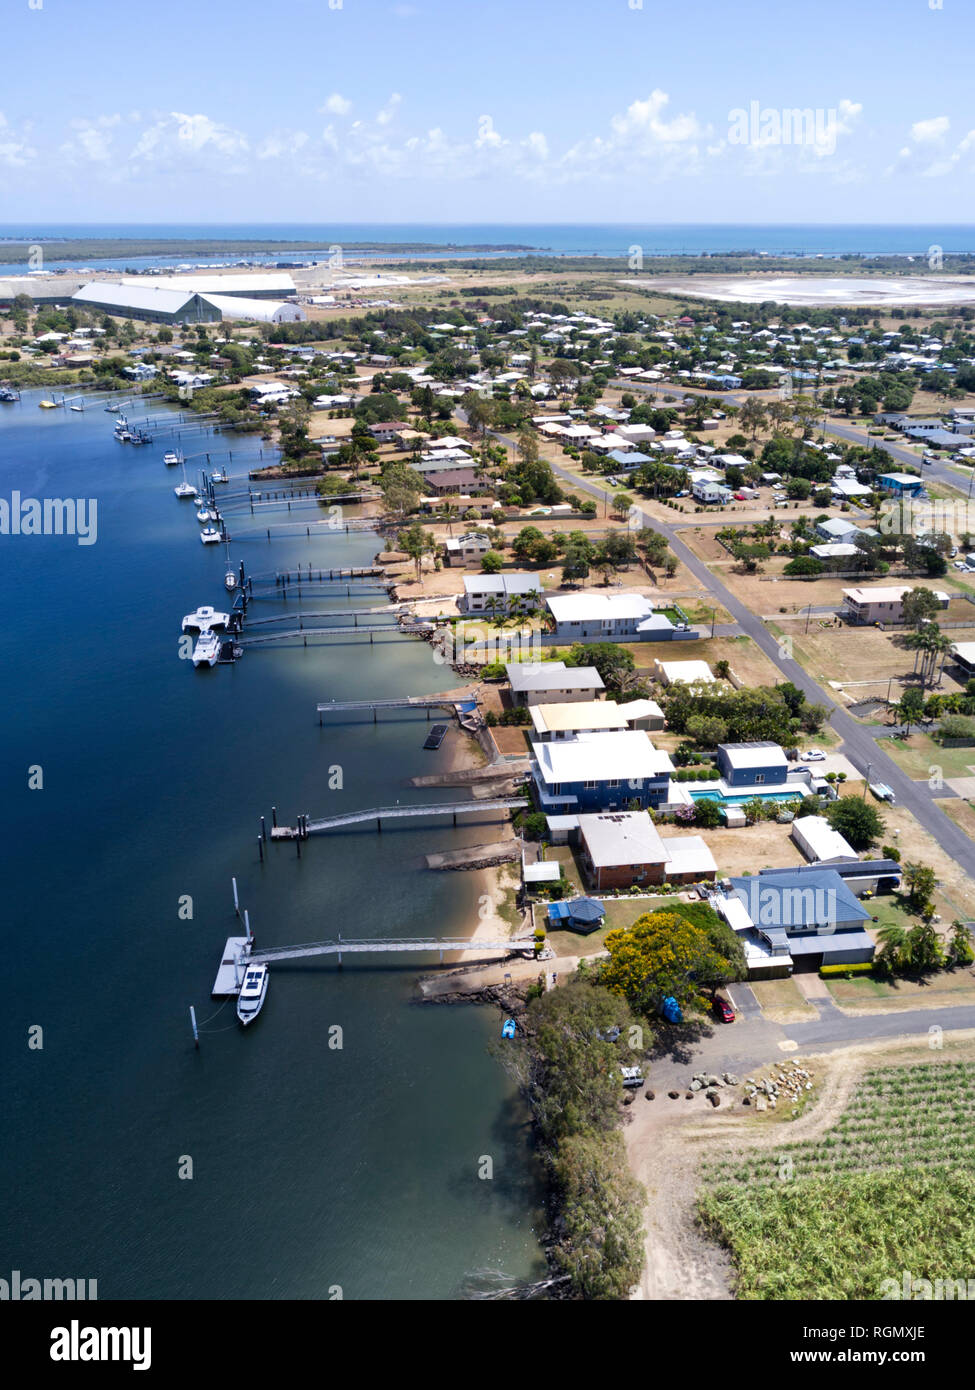 Vue aérienne de maisons avec leur propre jetée privée sur la rivière Burnett Burnett à Bundaberg, Queensland Australie Chefs Banque D'Images